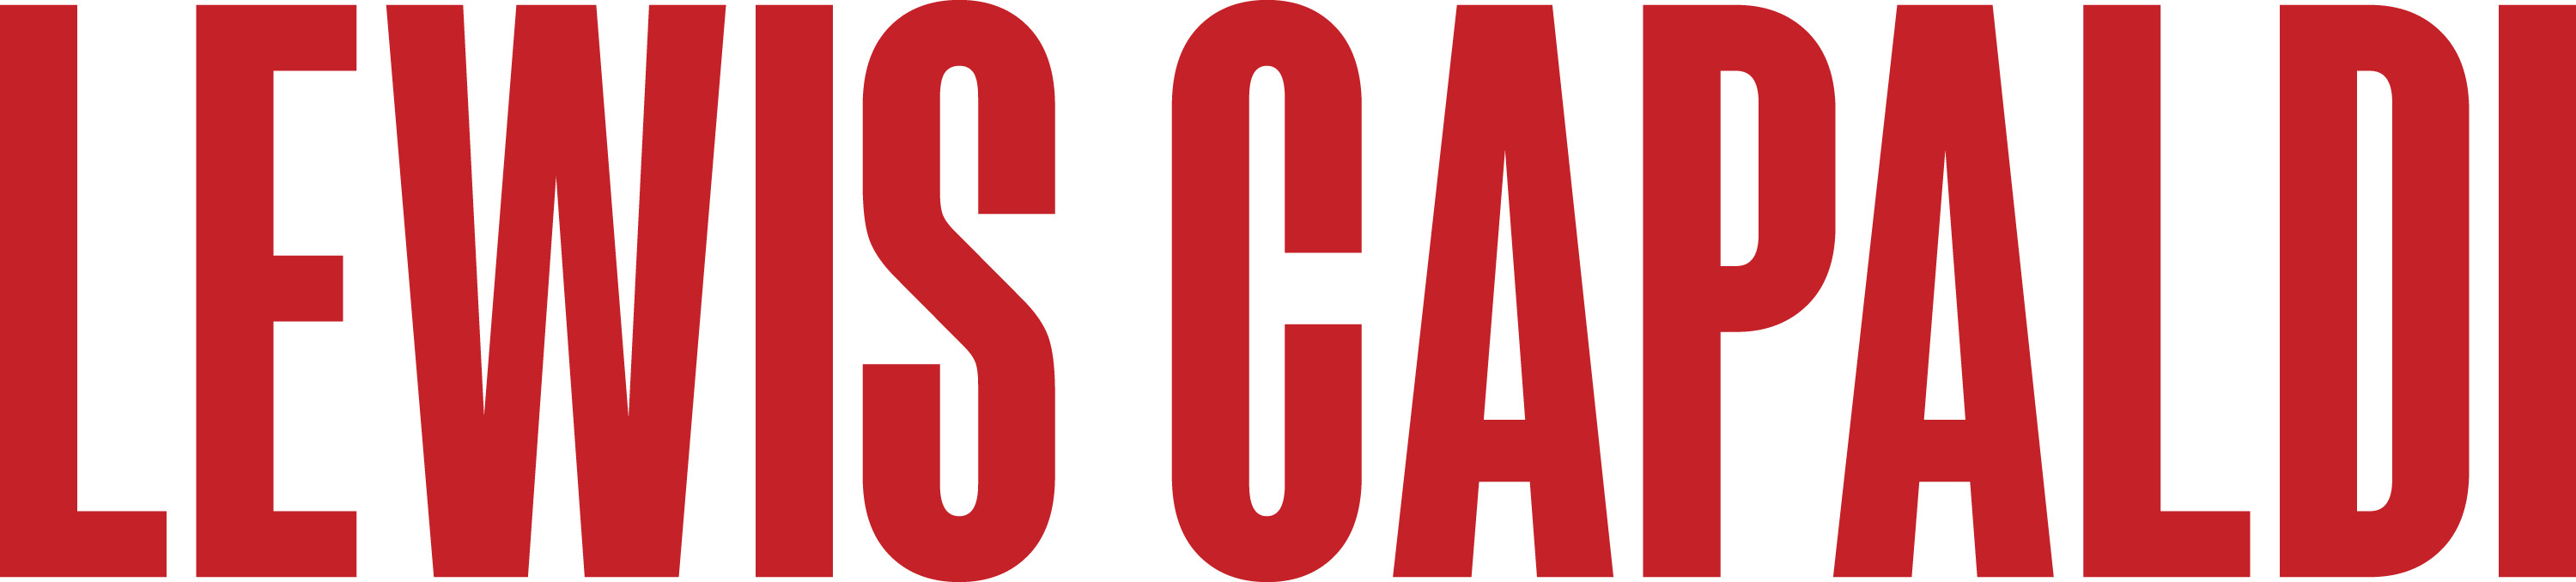 Lewis Capaldi Logo png icons